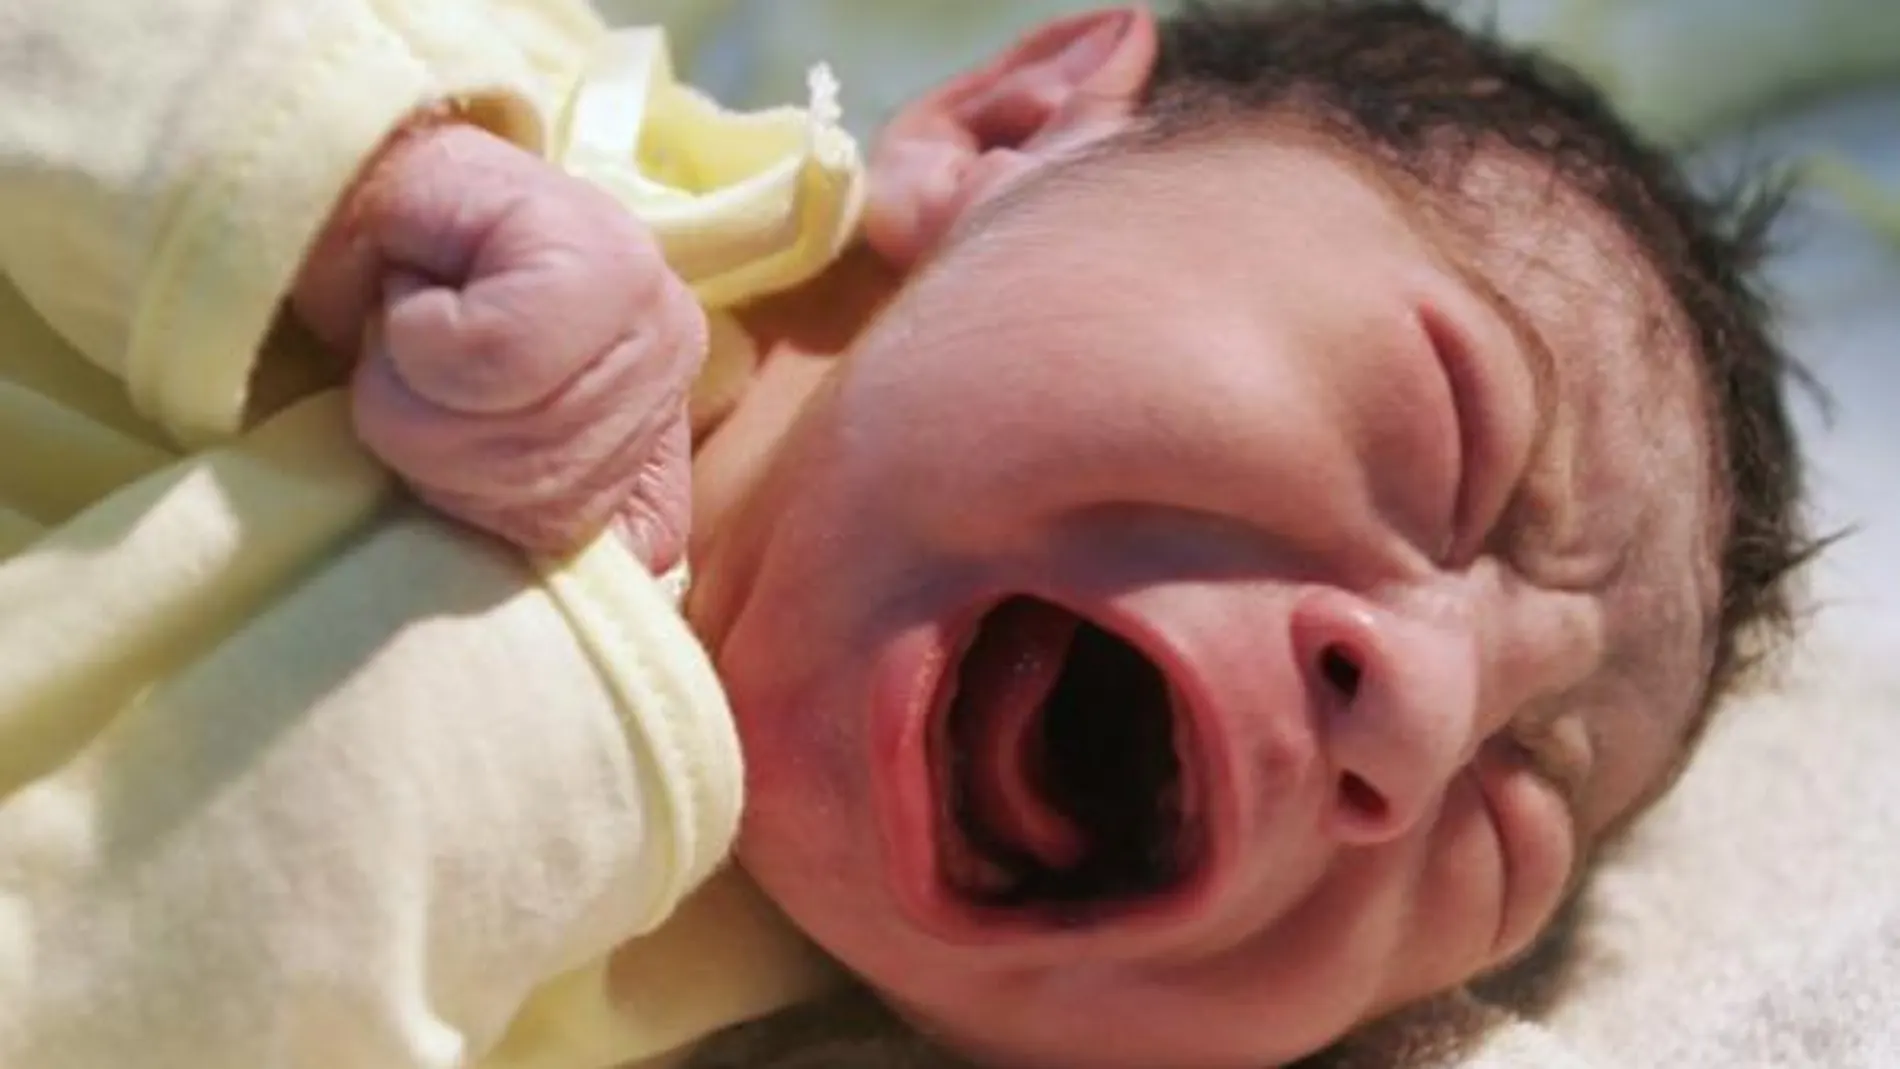 Resulta difícil saber por qué llora un recién nacido